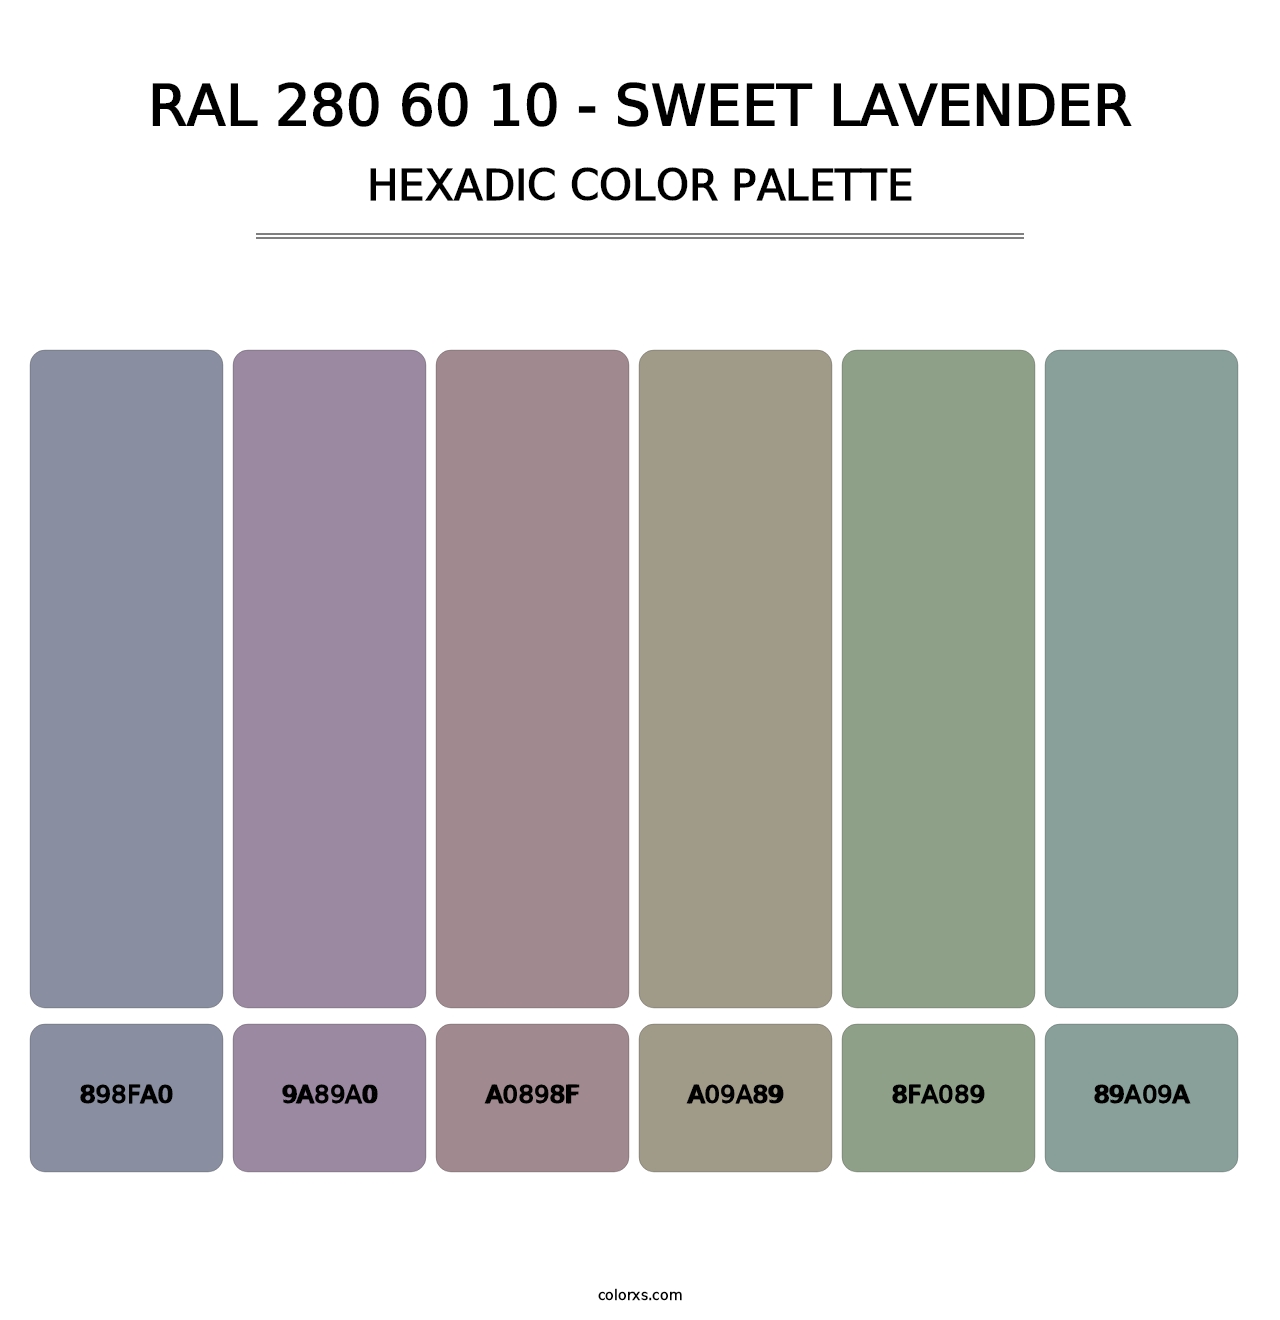 RAL 280 60 10 - Sweet Lavender - Hexadic Color Palette